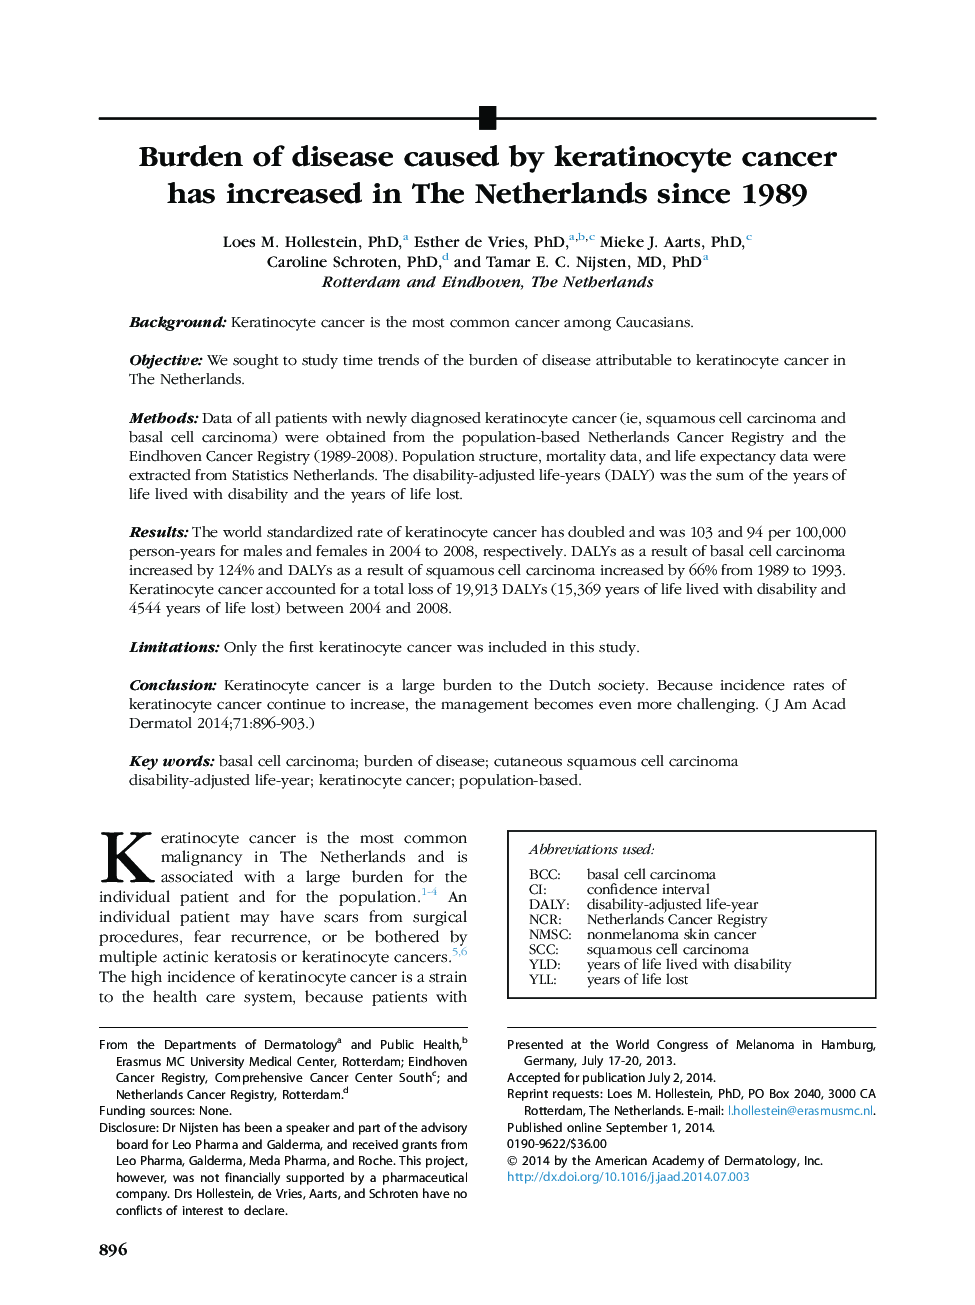 مقاله اصلی بیماری ناشی از سرطان کراتینوسیت در هلند از سال 1989 افزایش یافته است 